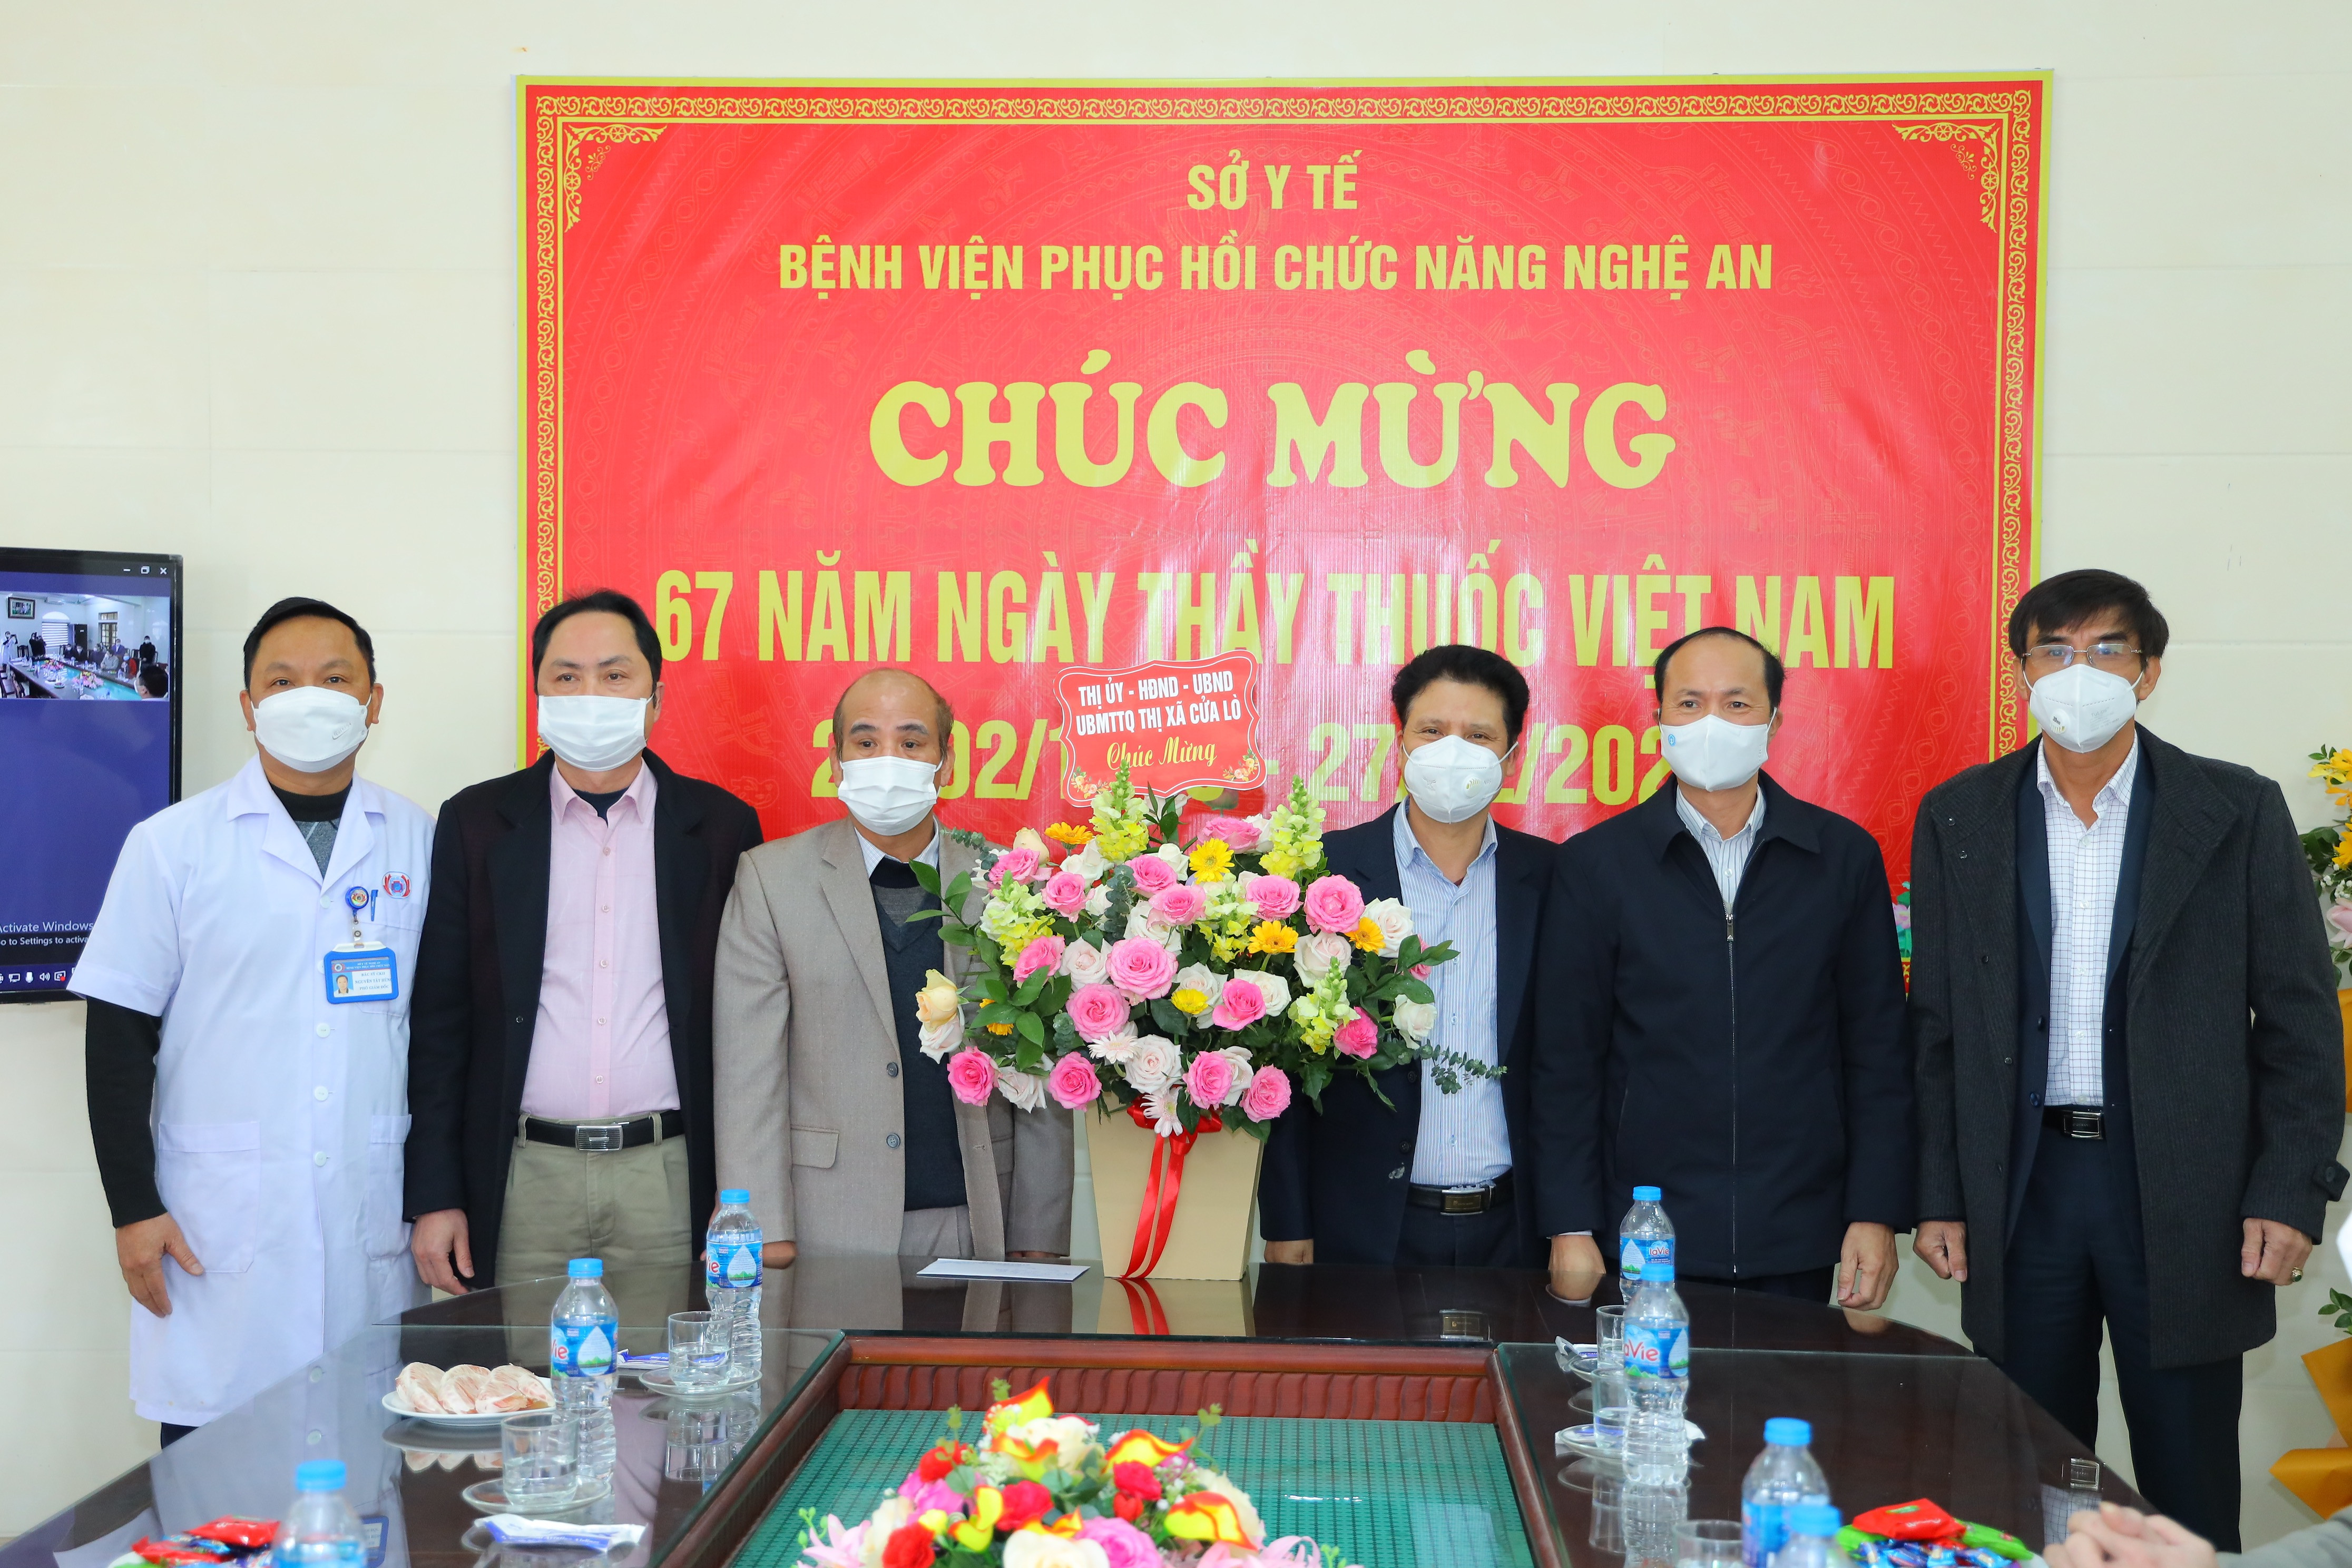 Dịp này, lãnh đạo Thị xã Cửa Lò cũng chúc mừng, tặng hoa Bệnh viện phục hồi chức năng Nghệ An và Trung tâm Y tế Cửa Lò. Ảnh Nguyên Sơn